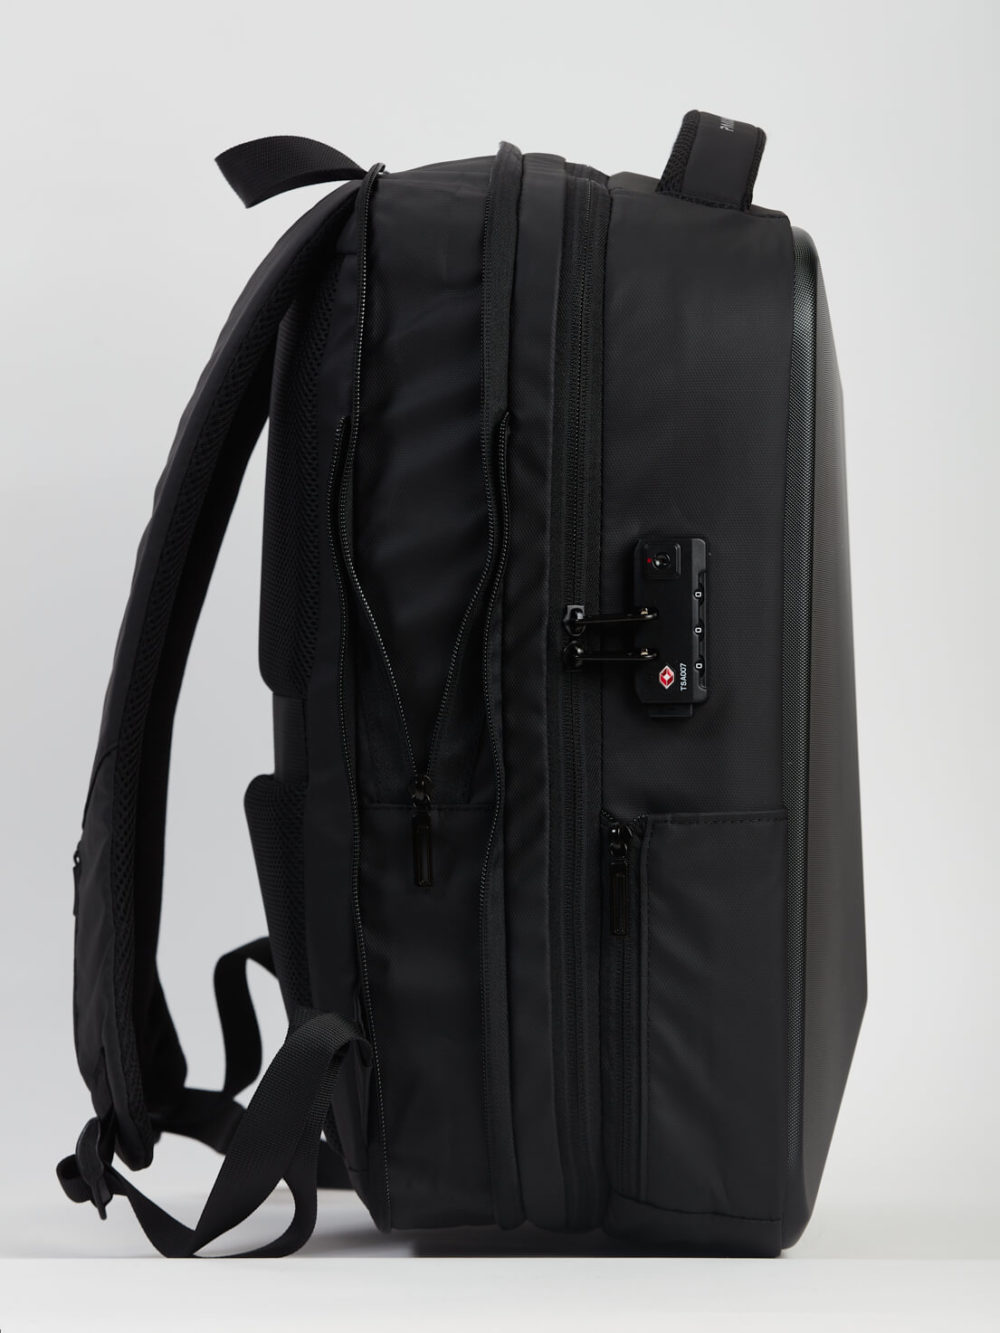 L'image montre un sac à dos noir avec de nombreuses poches et des bretelles rembourrées. Il possède une petite serrure à combinaison sur une poche latérale et est affiché sur fond gris.